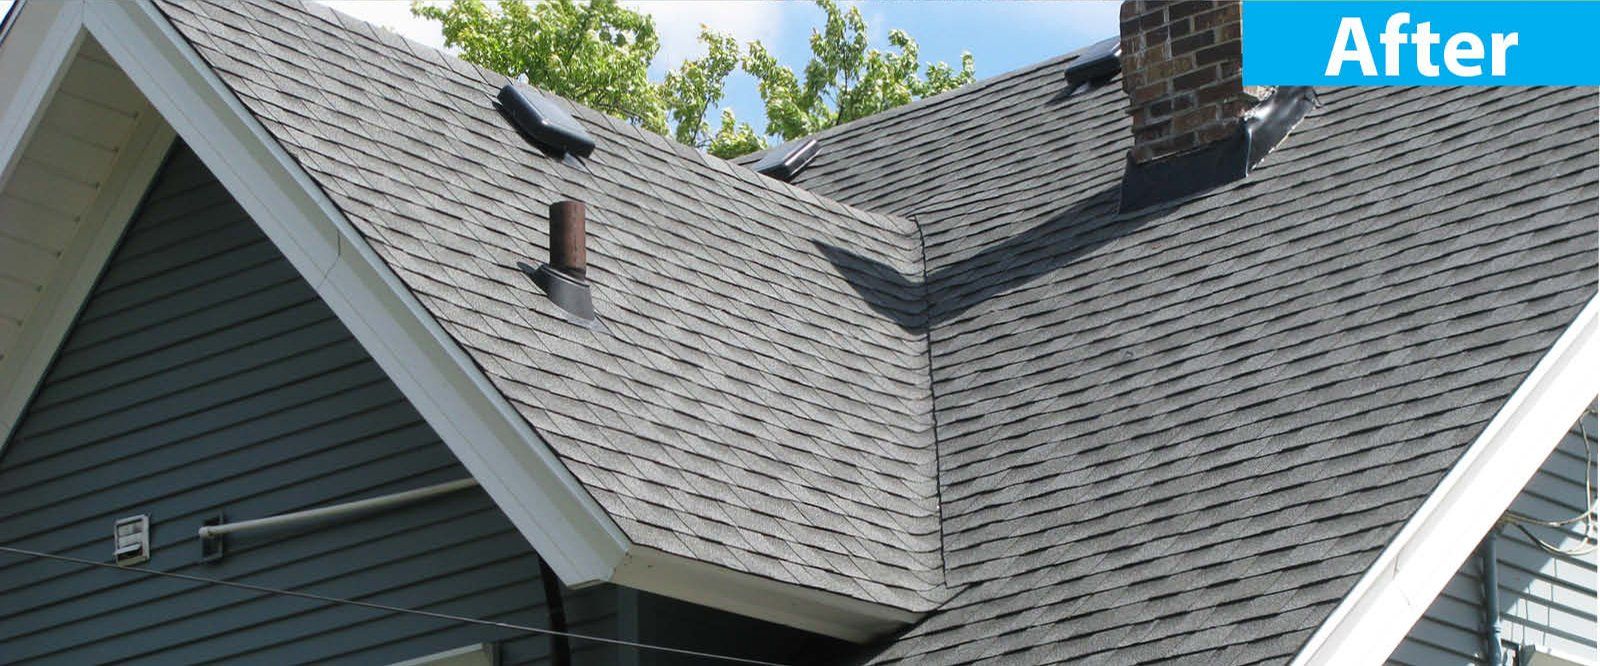 After Damaged Asphalt Roof — Burlington, WI — Mather’s Improvement Service LTD